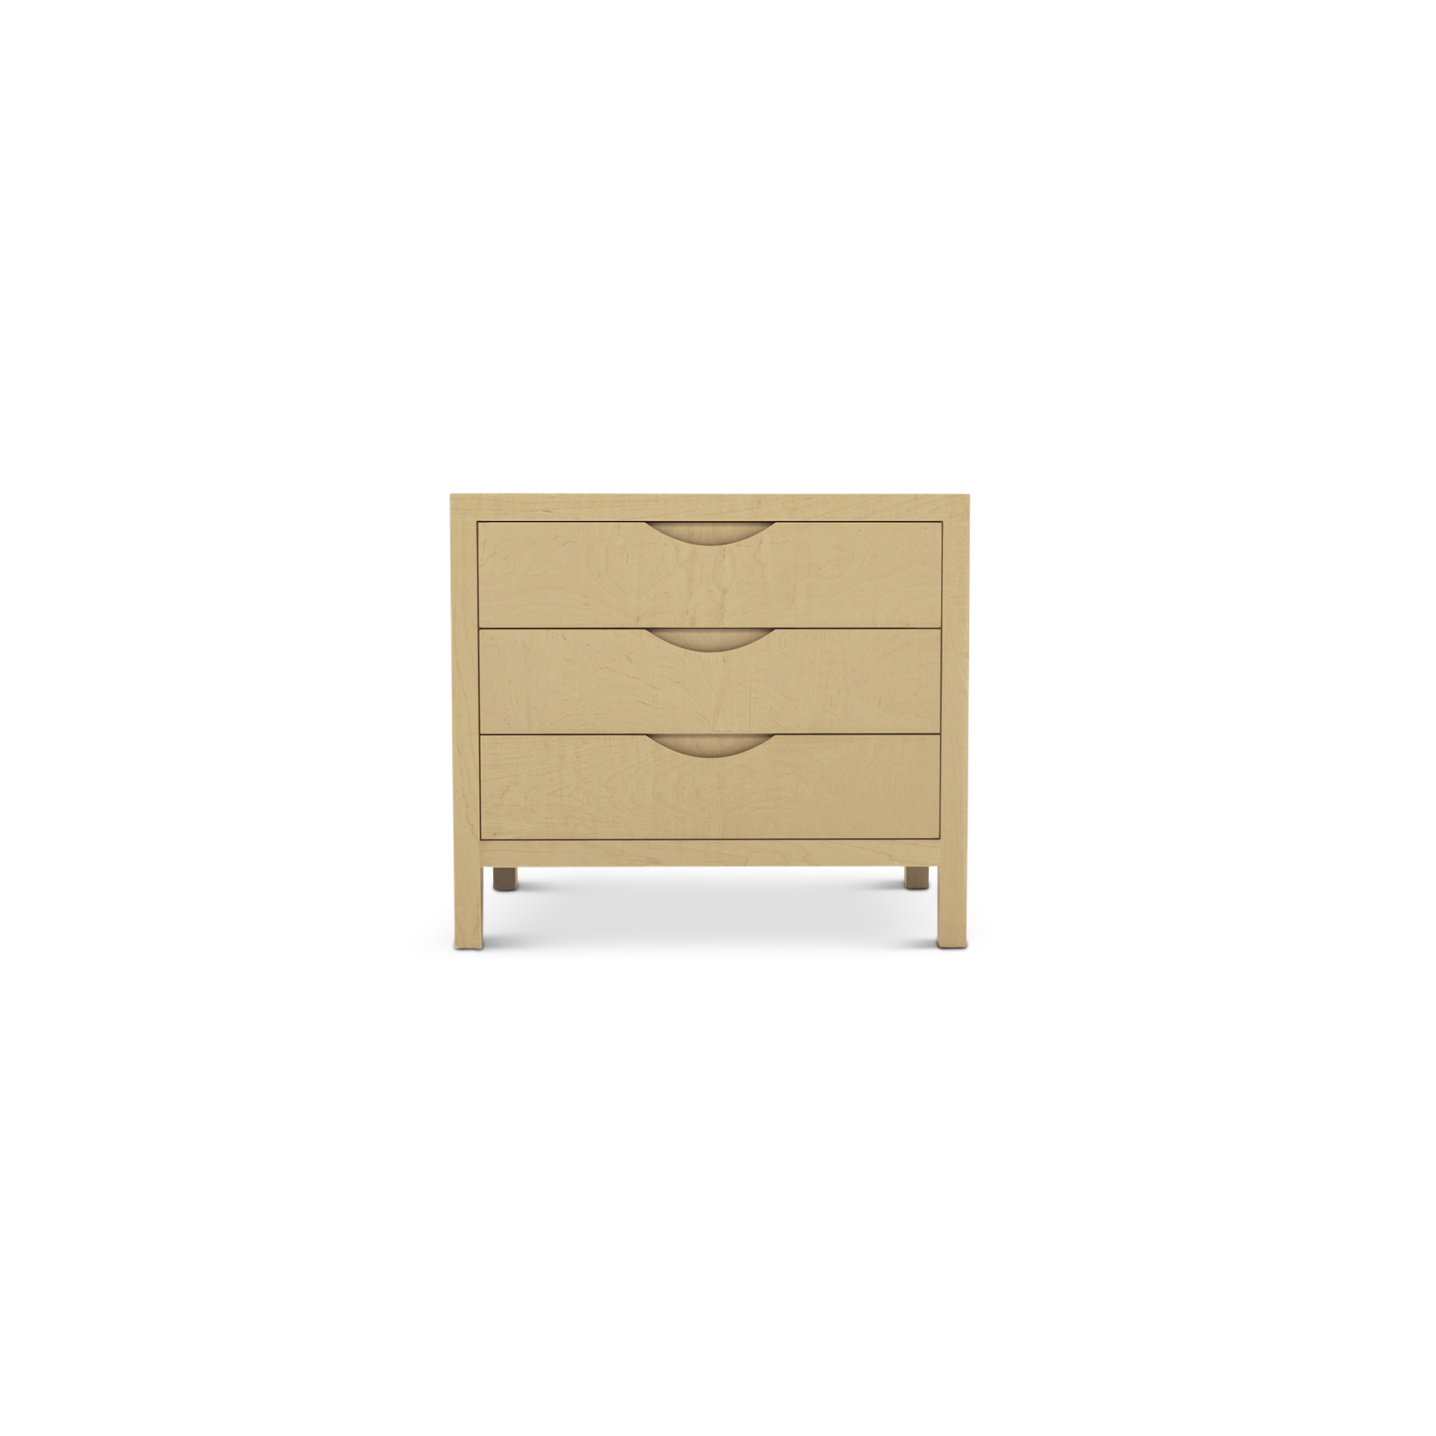 Three drawer maple wood modern Danish nightstand